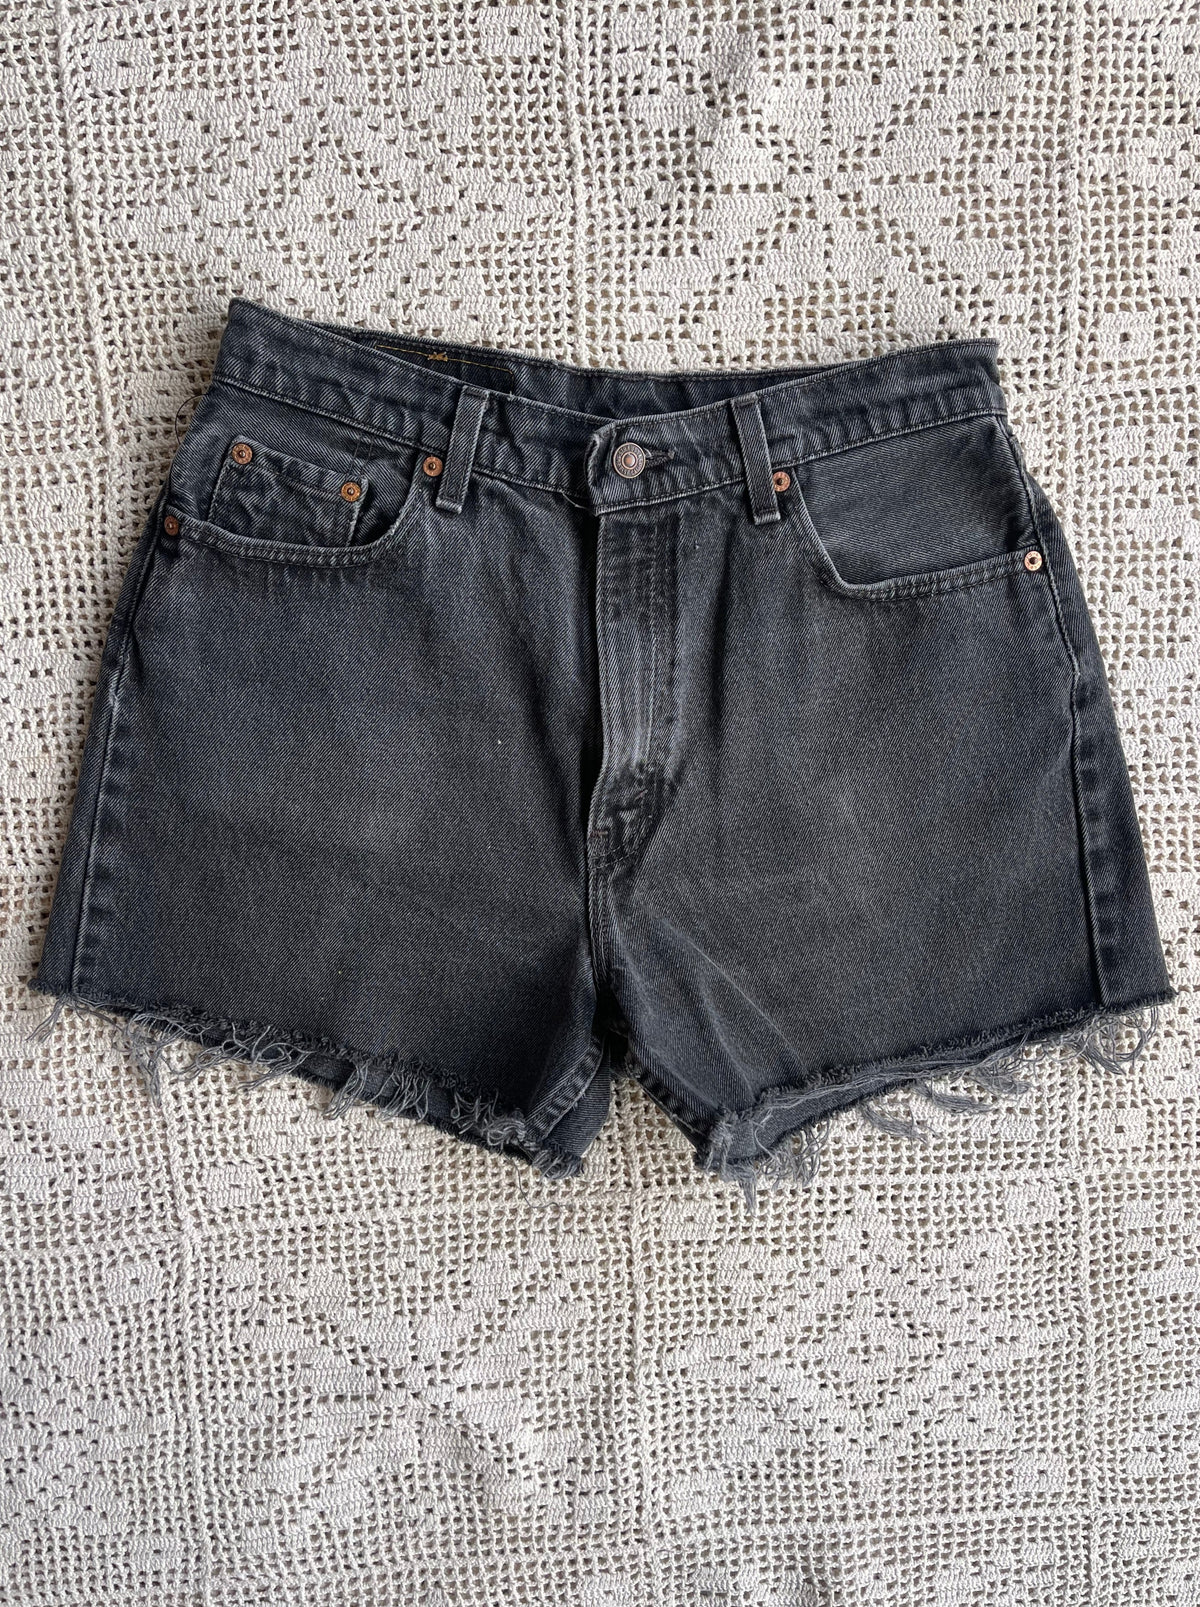 Levi's Cut Off Shorts Black Vintage